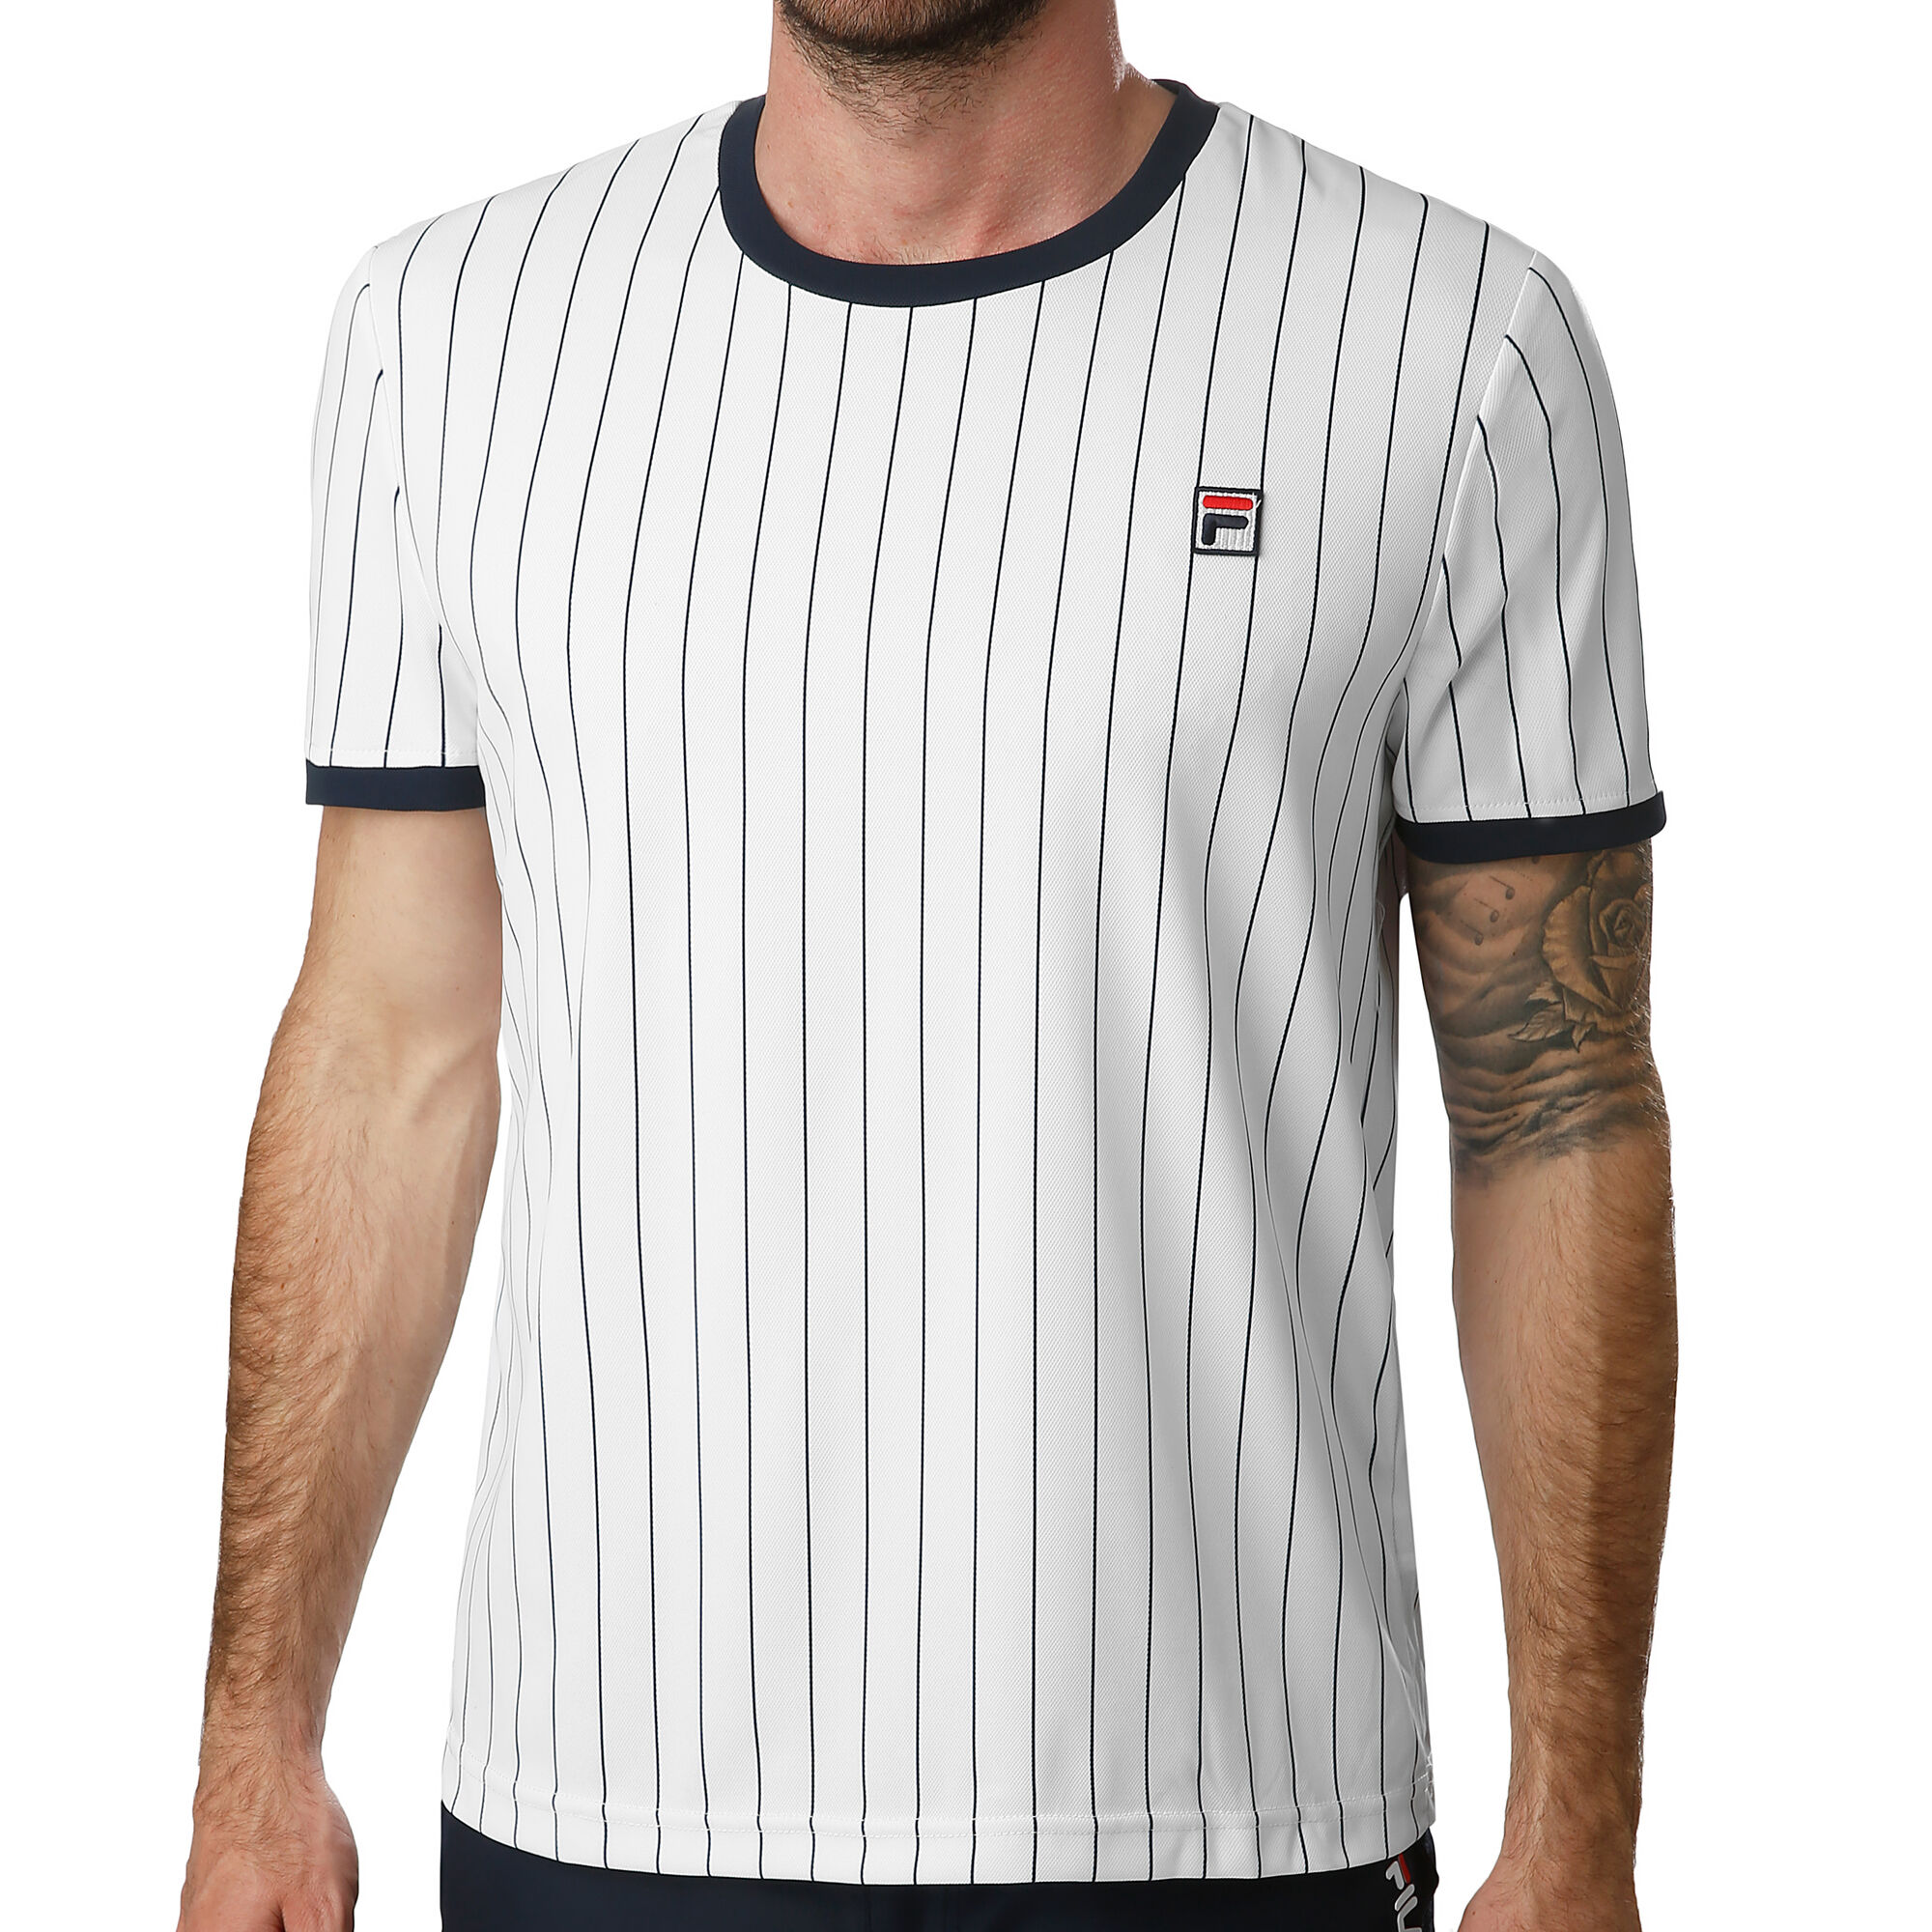 Fordi Plaske web Fila Stripes T-shirt Herrer - Hvid, Mørkeblå køb online | Tennis-Point